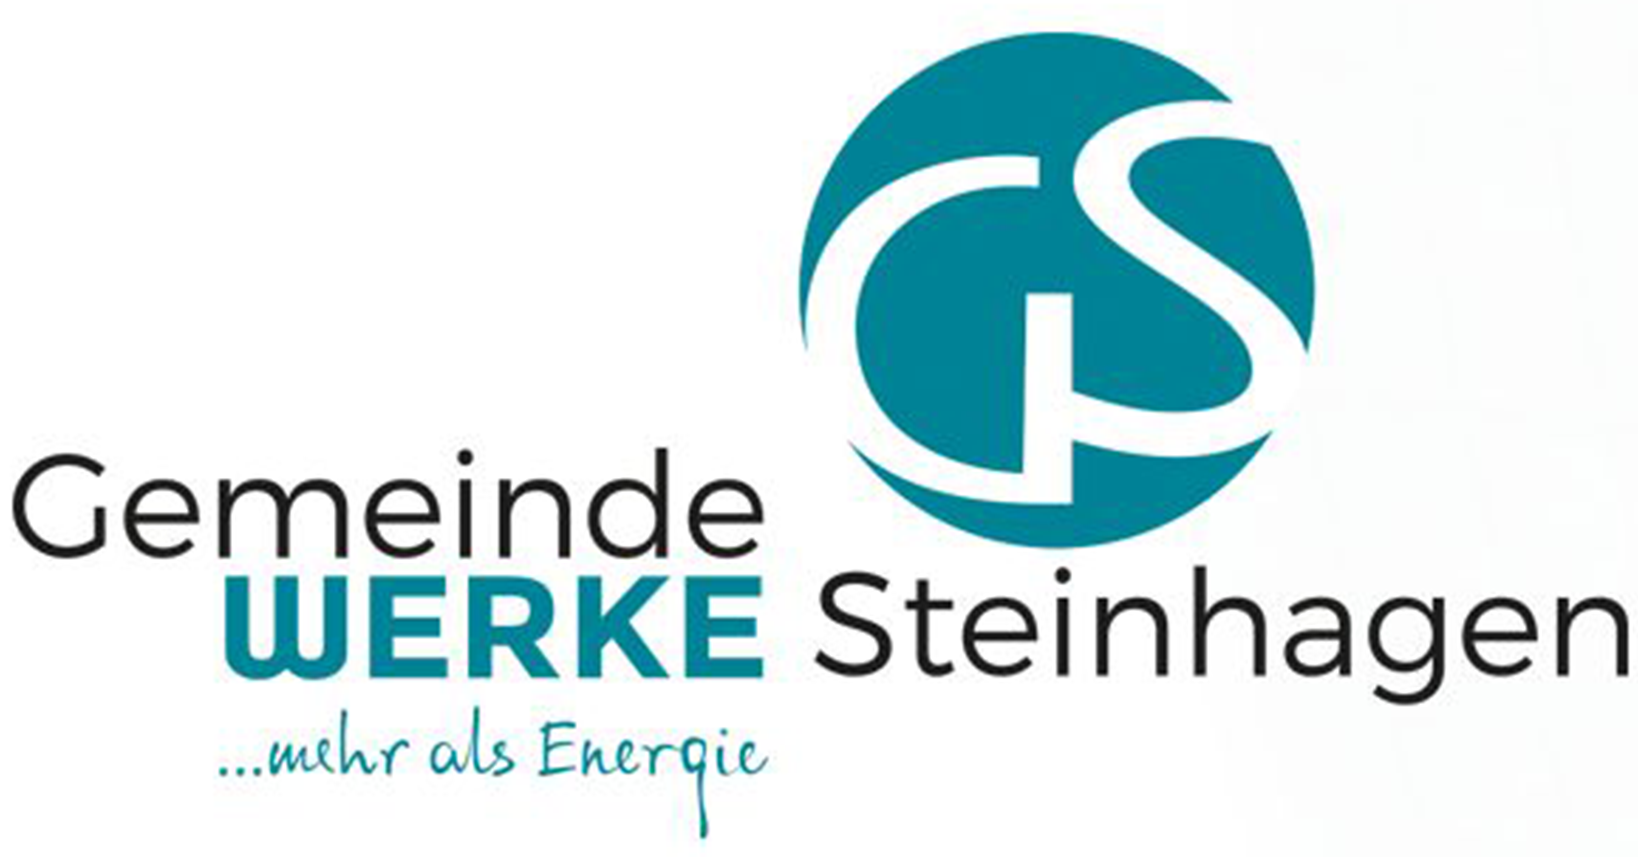 Gemeindewerke Steinhagen